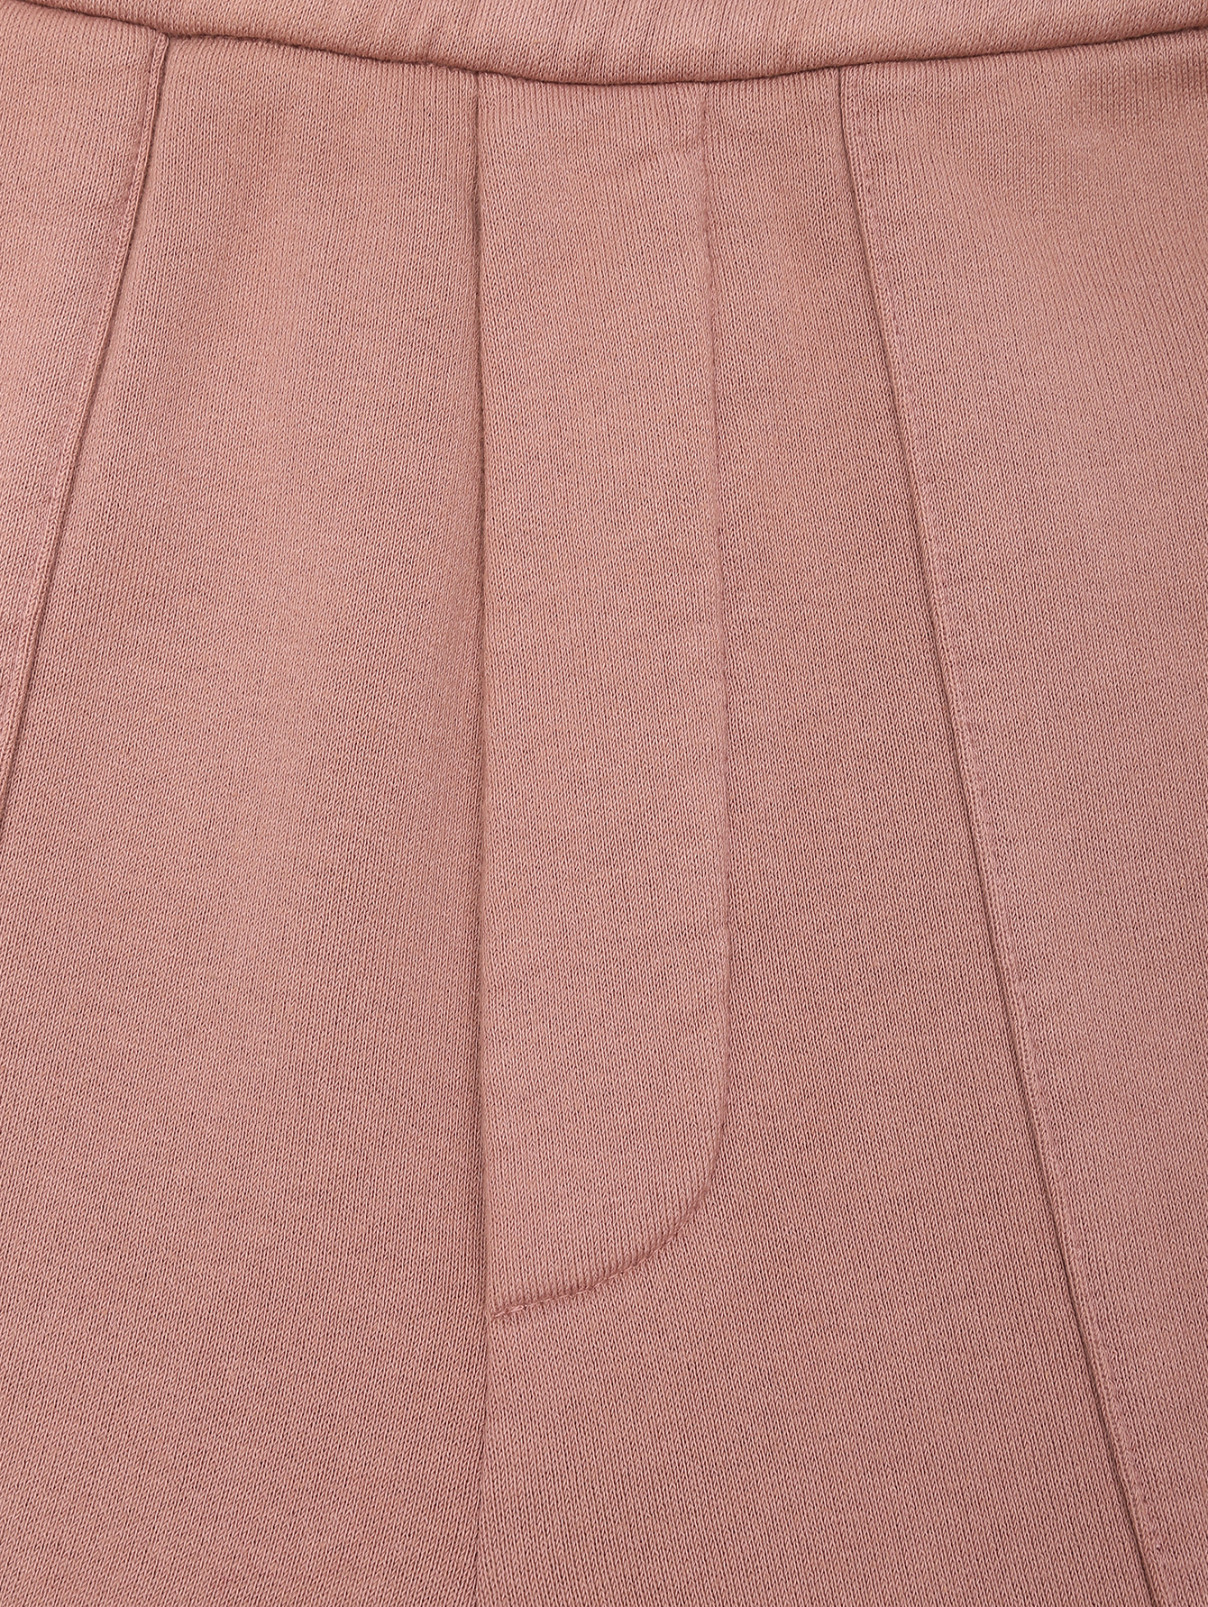 Однотонные брюки из хлопка на резинке Barena  –  Деталь1  – Цвет:  Розовый